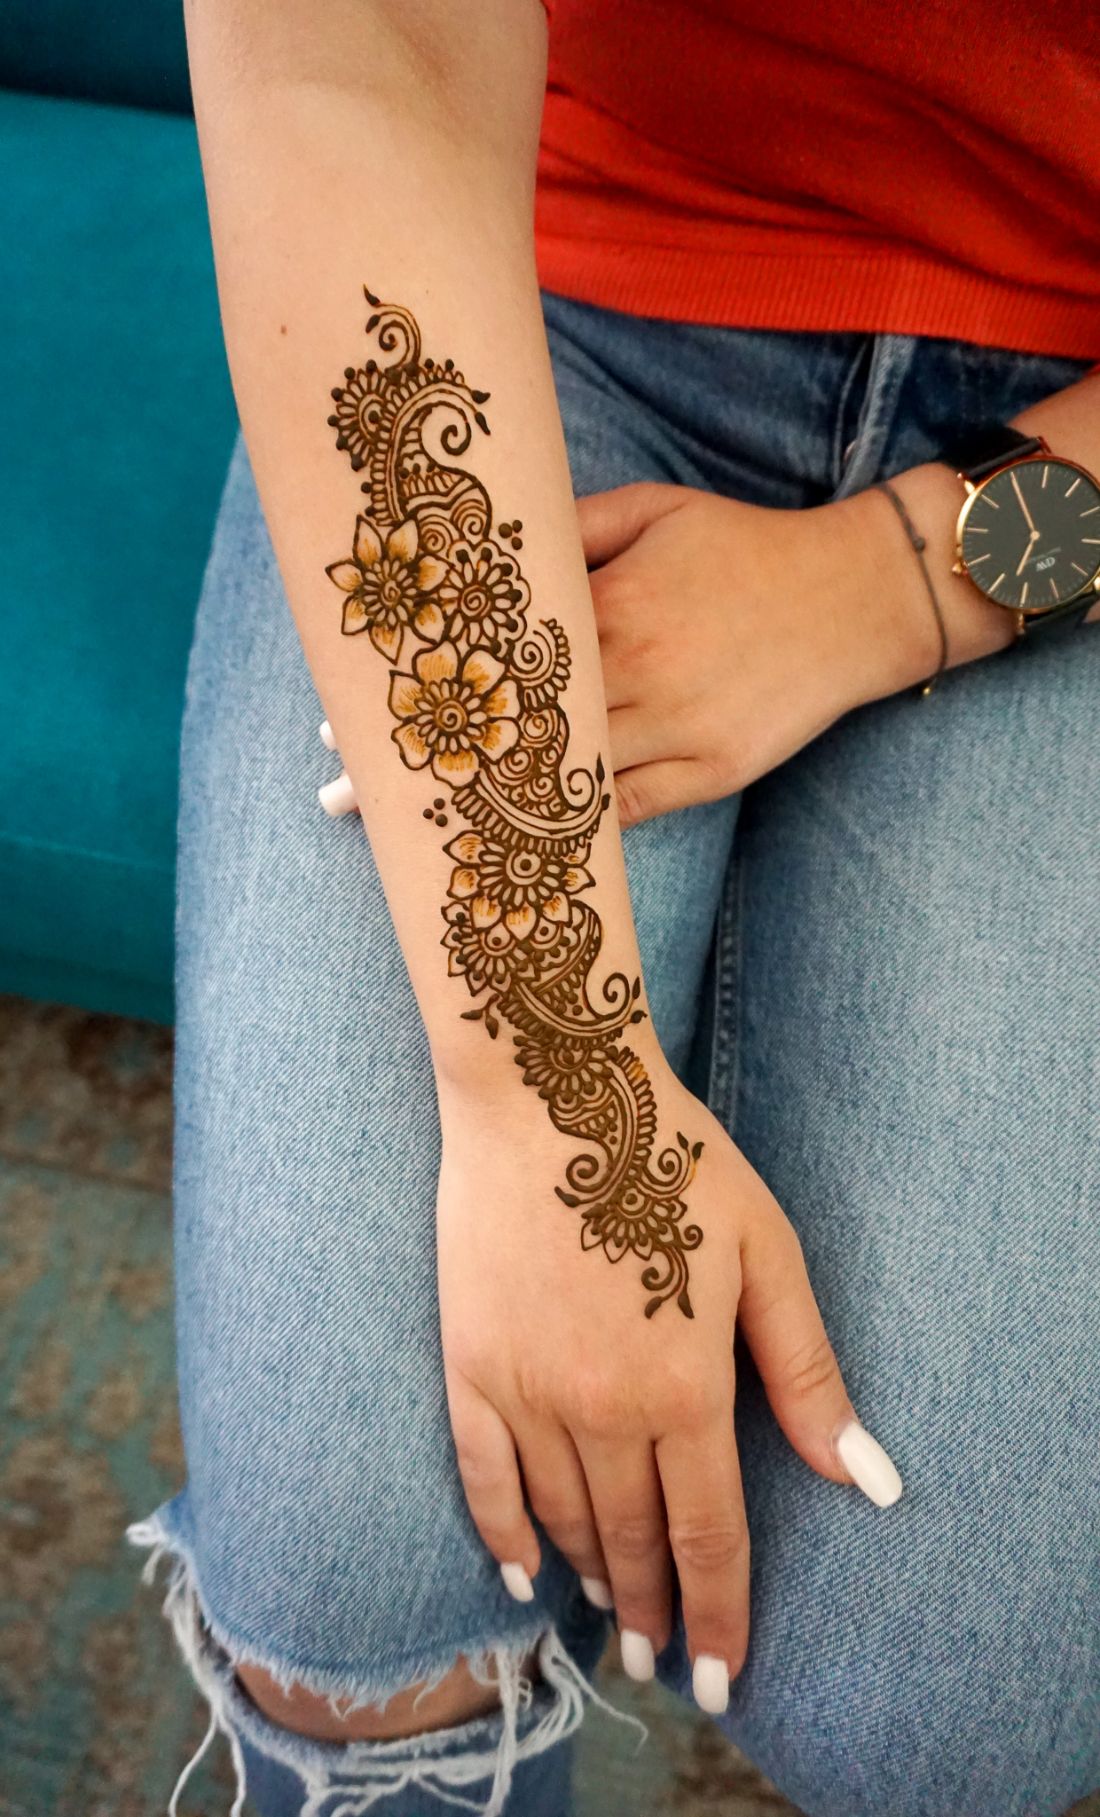 Florales Henna Design von Henna Art, einfach so, für sich selber